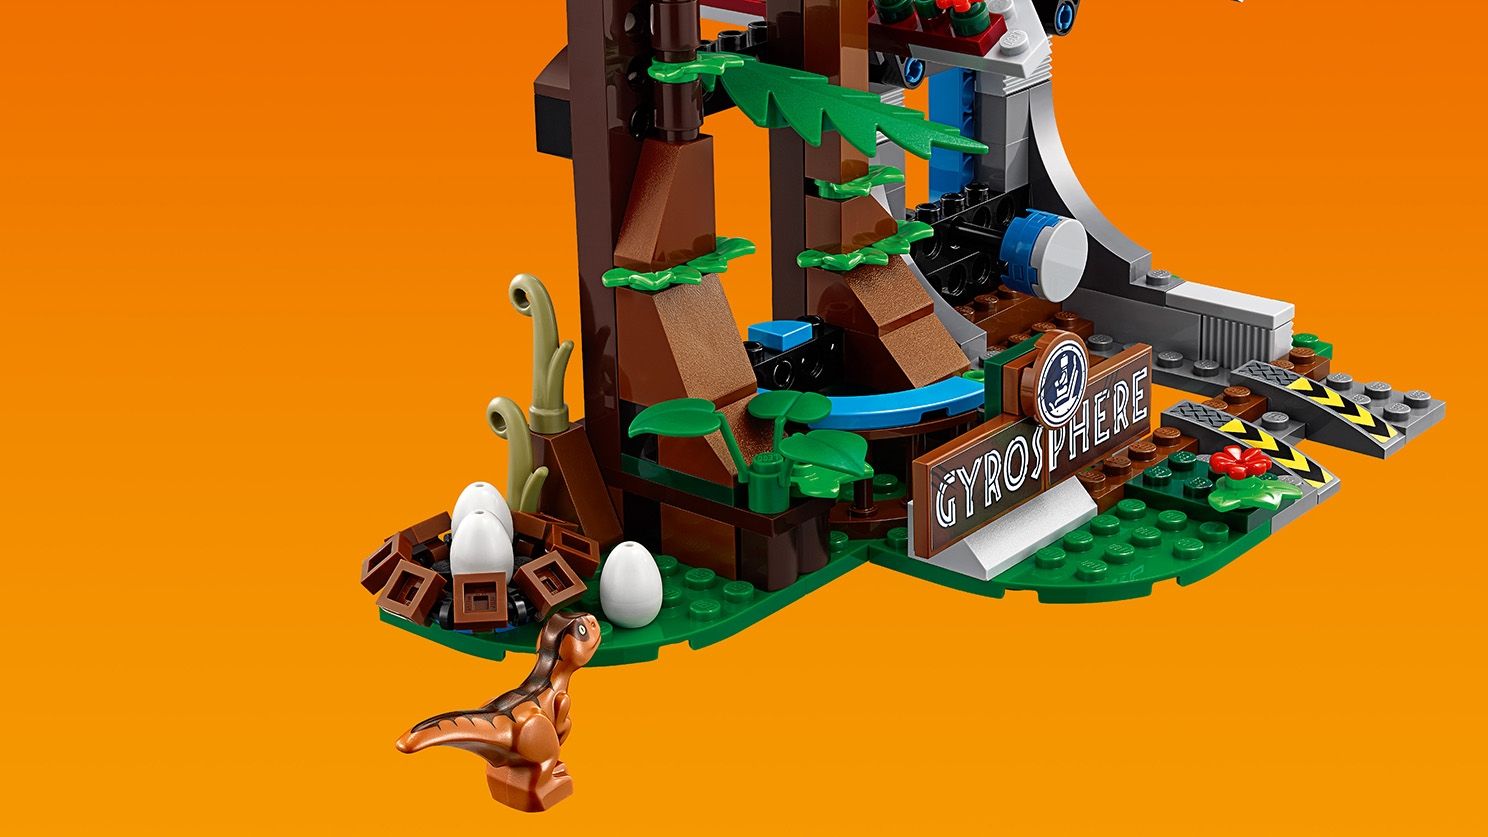 LEGO Jurassic World 75929 Carnotaurus - Flucht in der Gyrosphere LEGO_75929_WEB_SEC06_1488.jpg